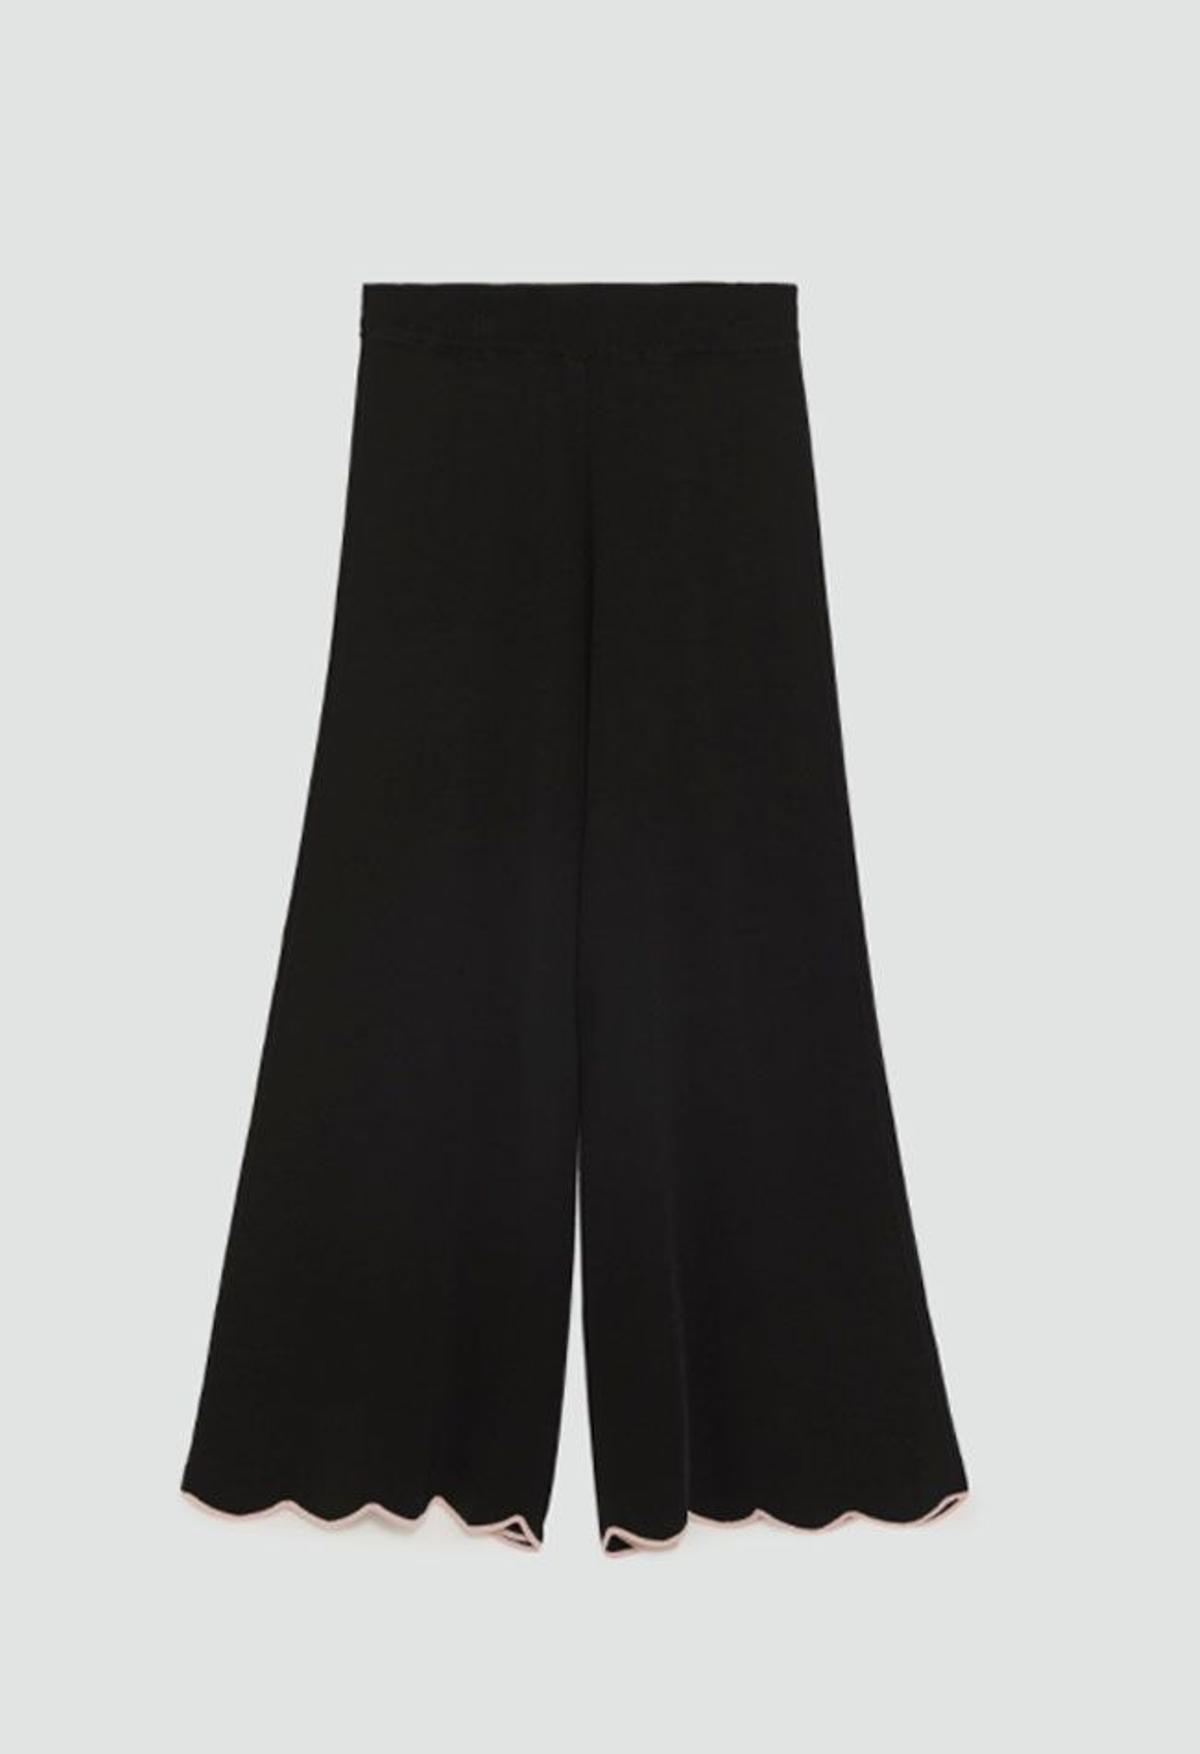 Pantalón cullotte de Zara, del look de Amaia de OT en El Hormiguero